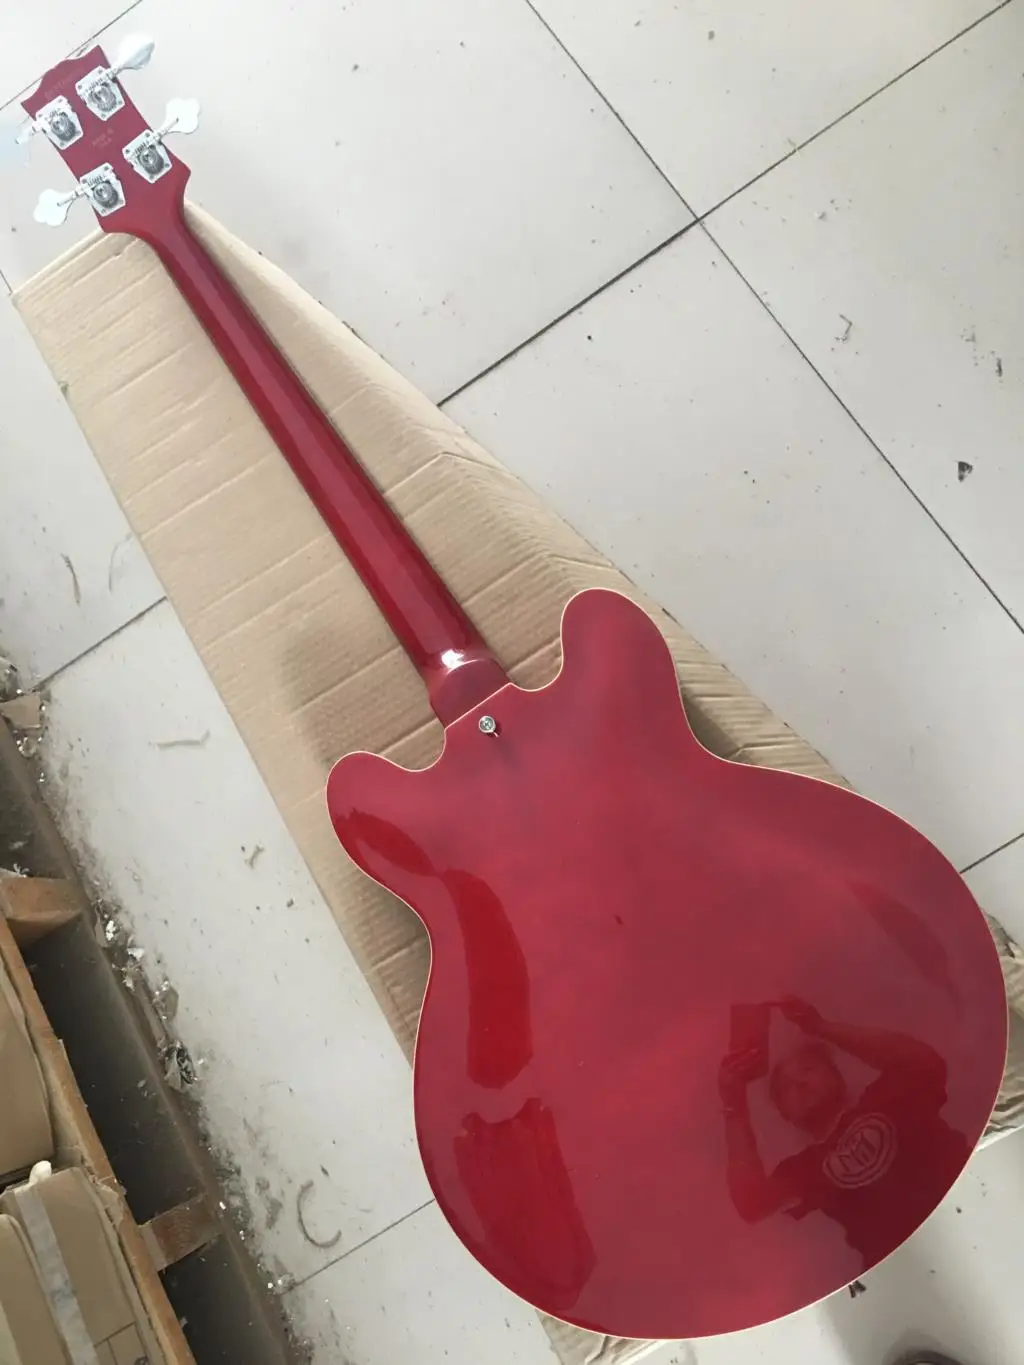 4-струнная красная электрическая бас-гитара с полым корпусом, золотая фурнитура, розетка из розового дерева в наличии 11 335